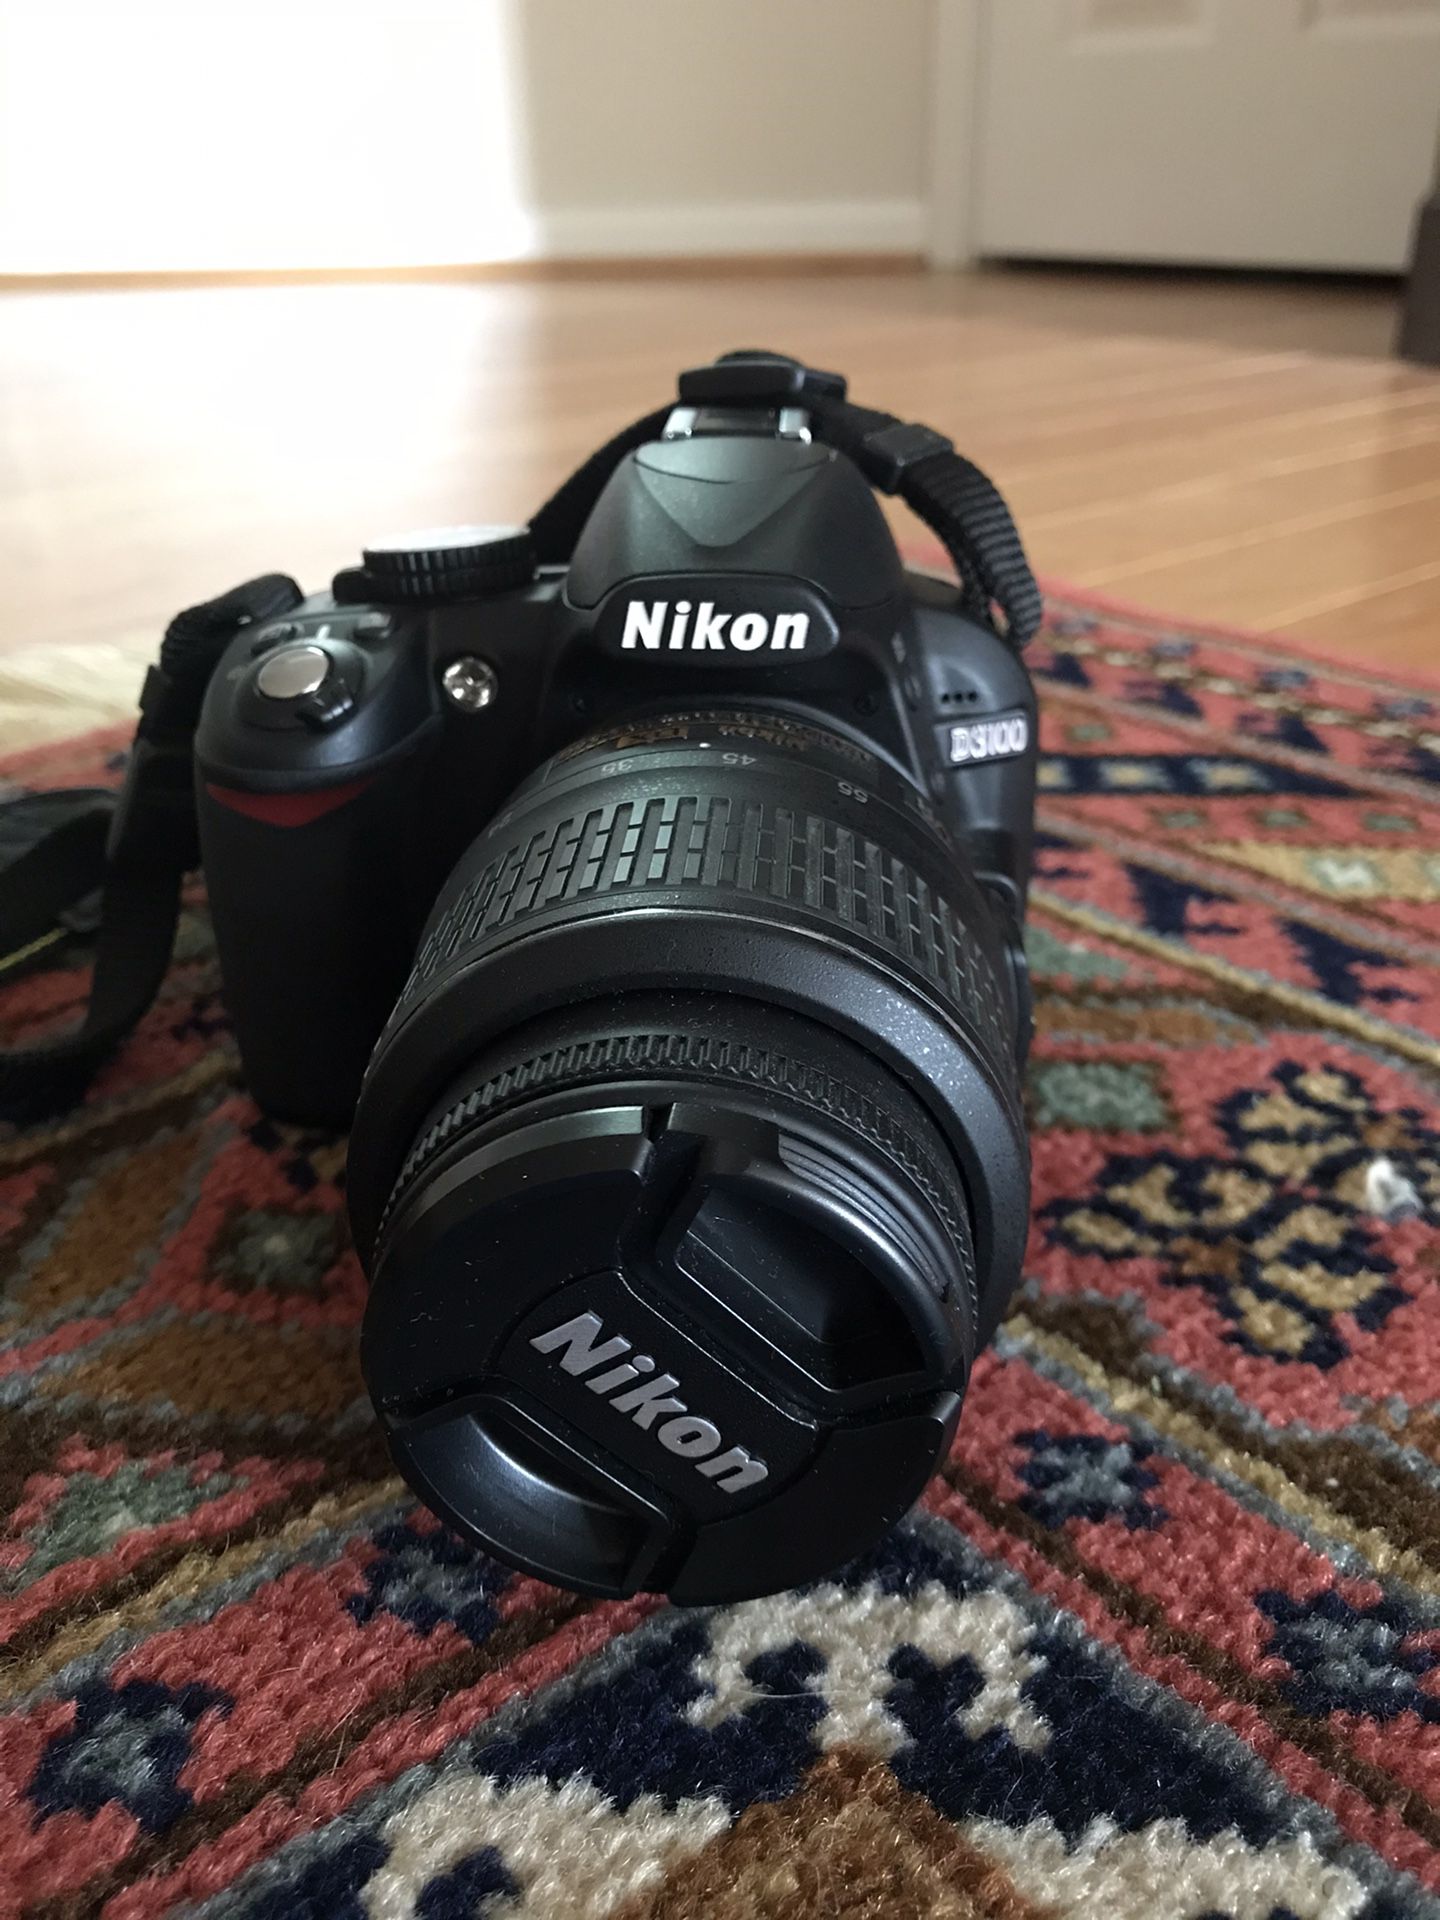 Nikon D3100 DSLR camera